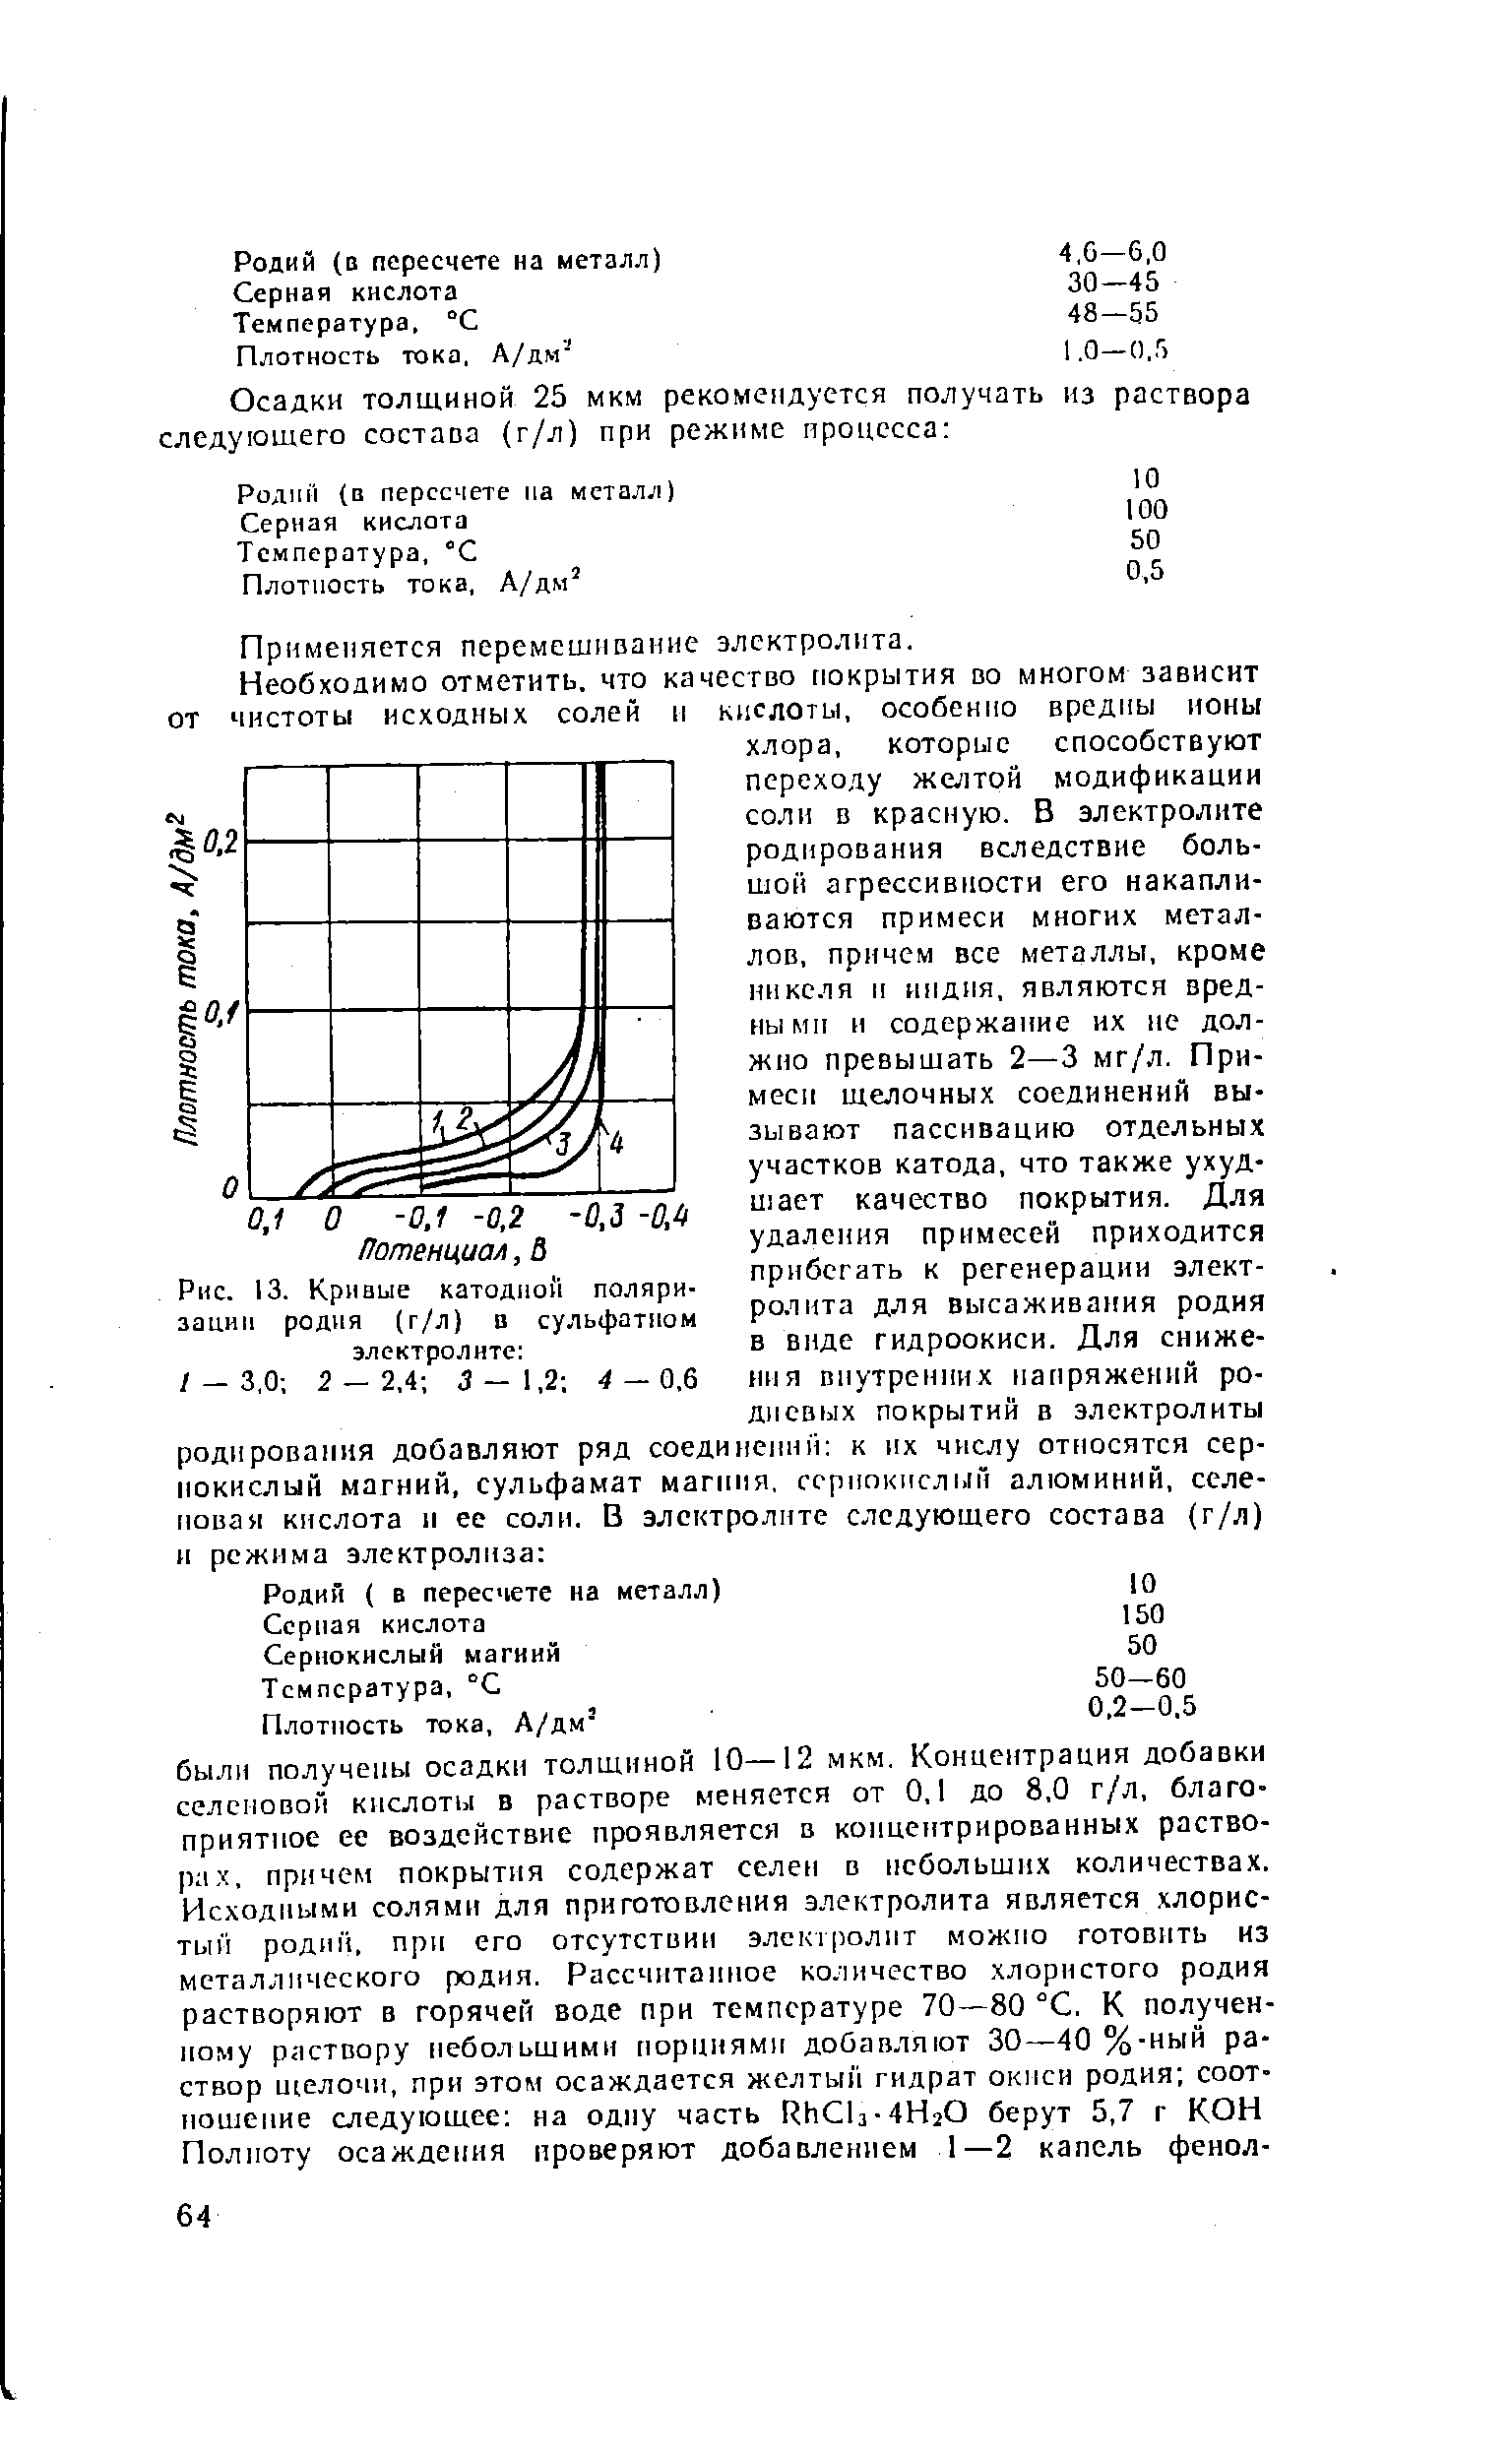 Рис. 13. Кривые катодной поляризации родня (г/л) D сульфатном электролите 